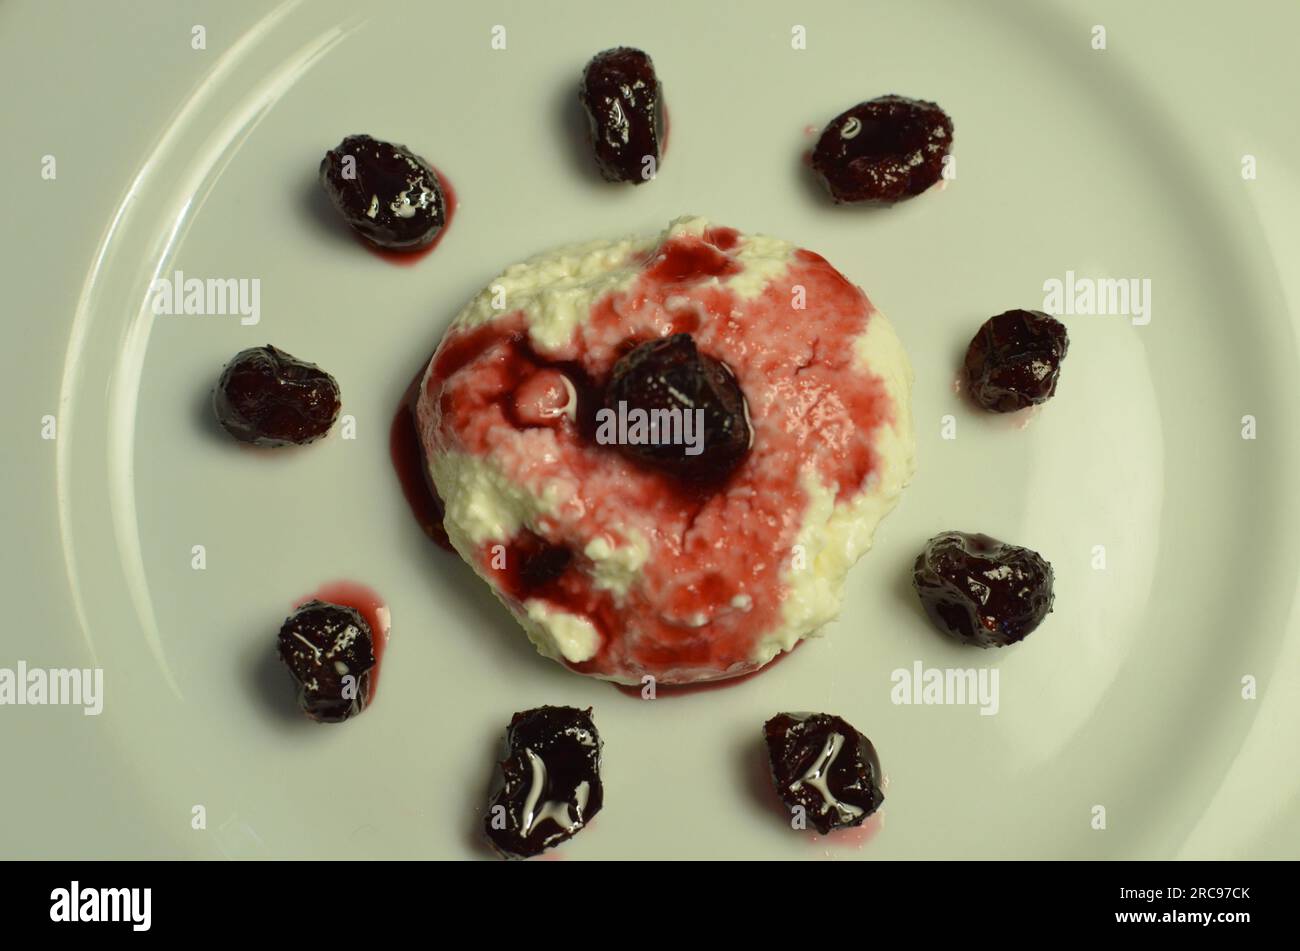 Una terrina dal sapore morbido e la cremosità ideale per ricevere una gelatina di frutta rossa. Foto Stock